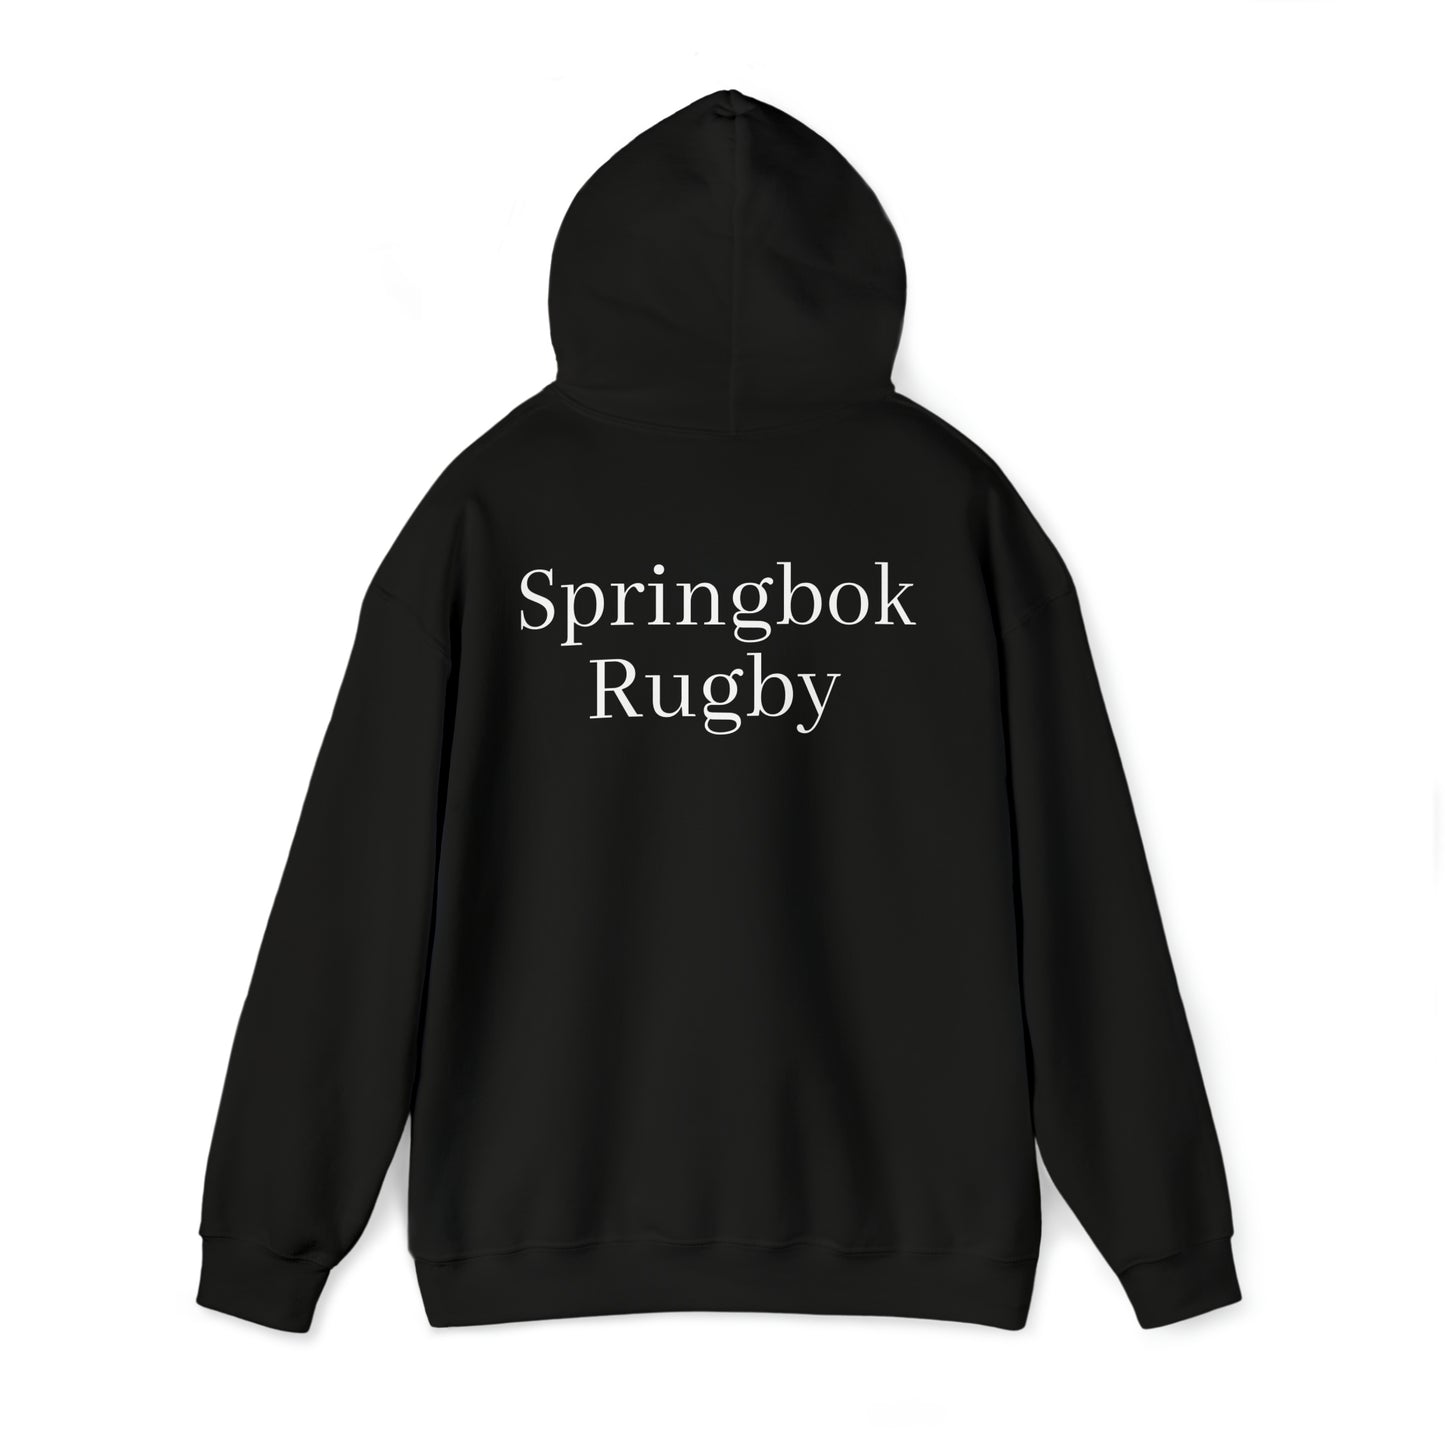 Springboks Team Photo - dark hoodies